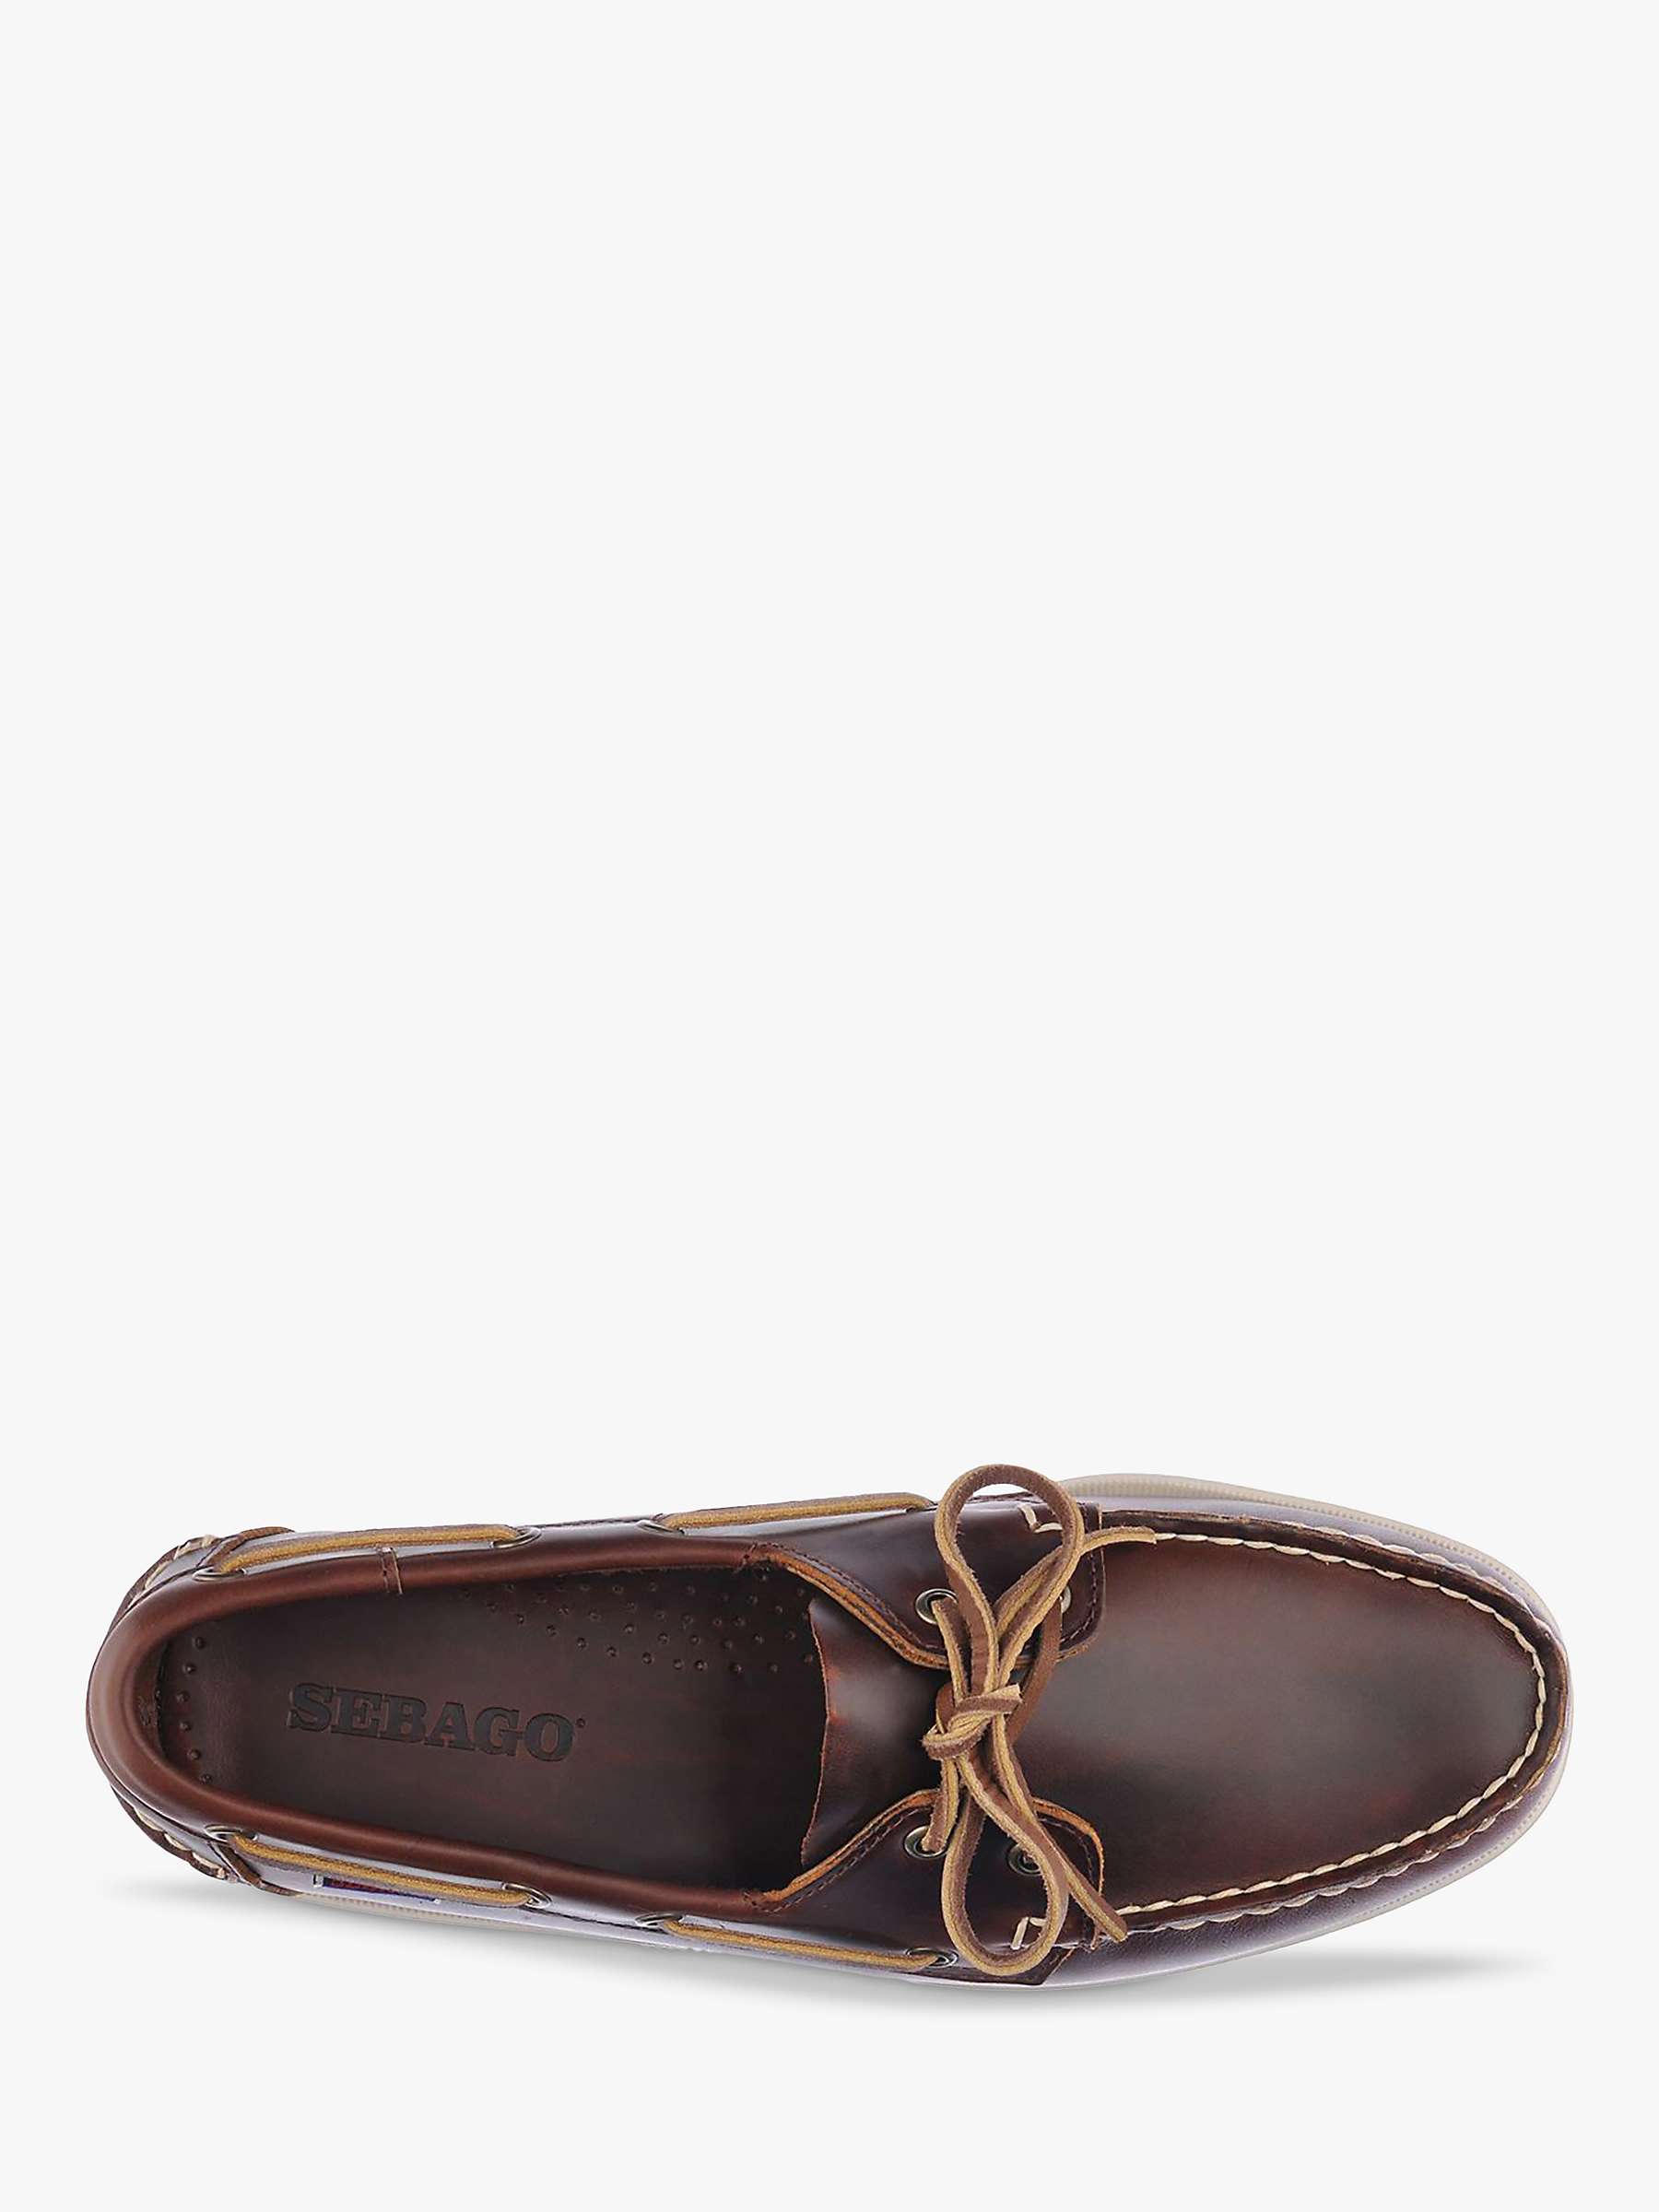 Buy Sebago Docksides FGL Leather Boat Shoes, Brown Online at johnlewis.com